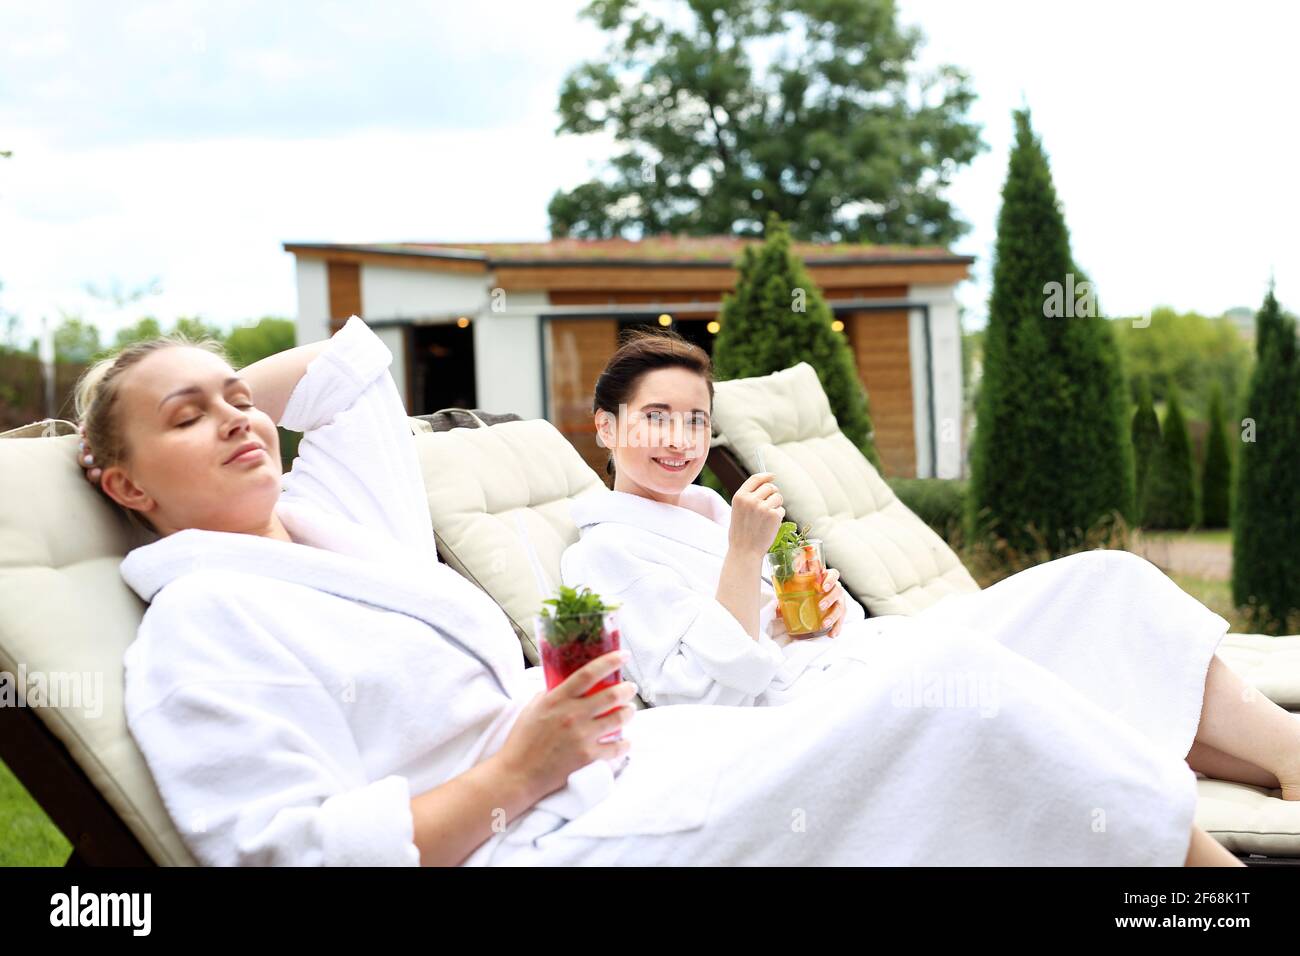 Le coppie possono prendere il sole sui lettini. Le donne si rilassano in una lussuosa spa. Due donne si rilassano sulle sedie a sdraio in una soleggiata giornata estiva Foto Stock